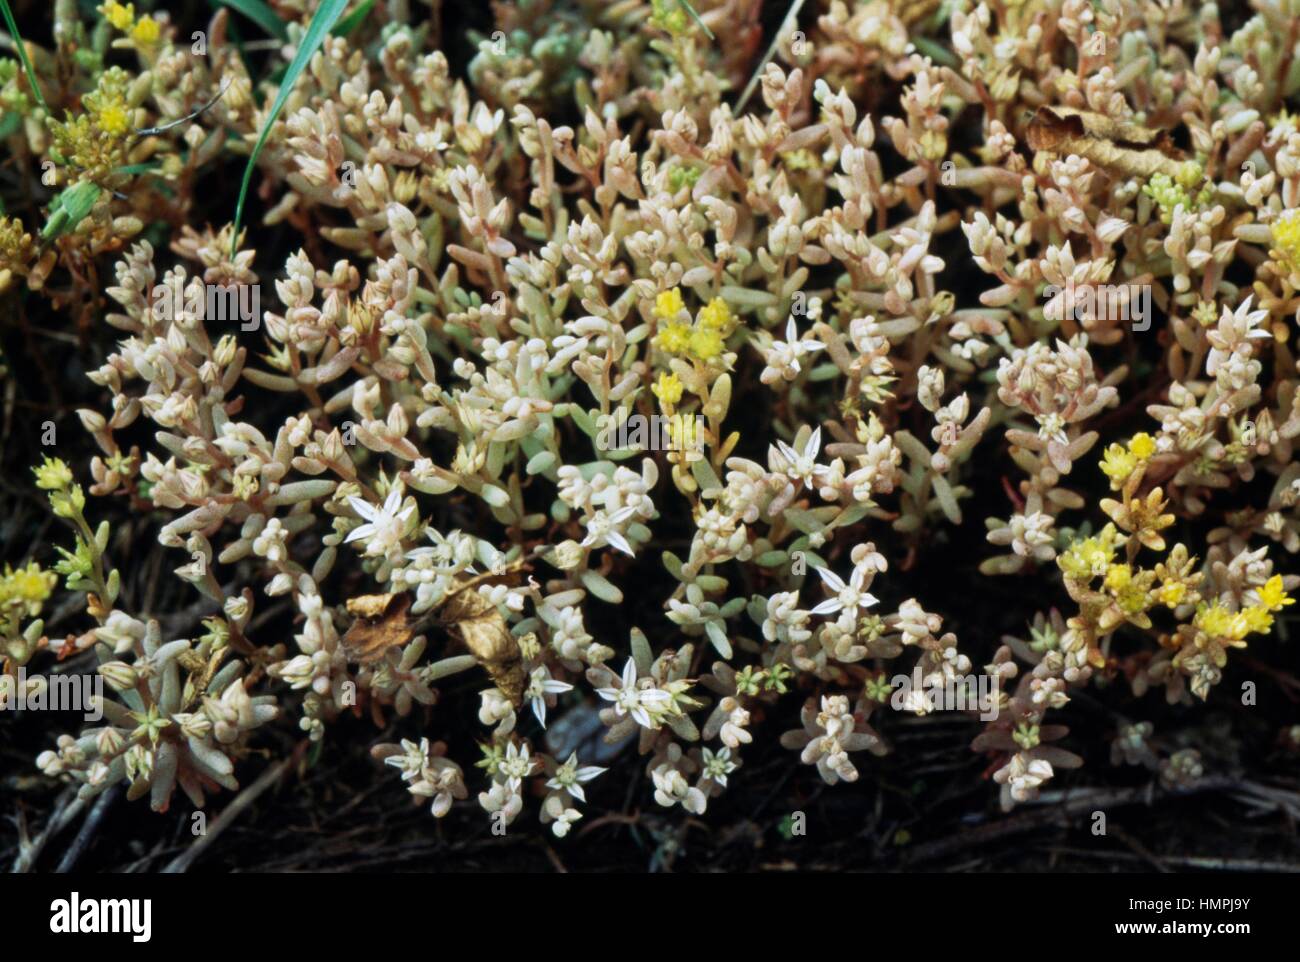 Red Stonecrop (Sedum rubens), Crassulaceae. Stock Photo